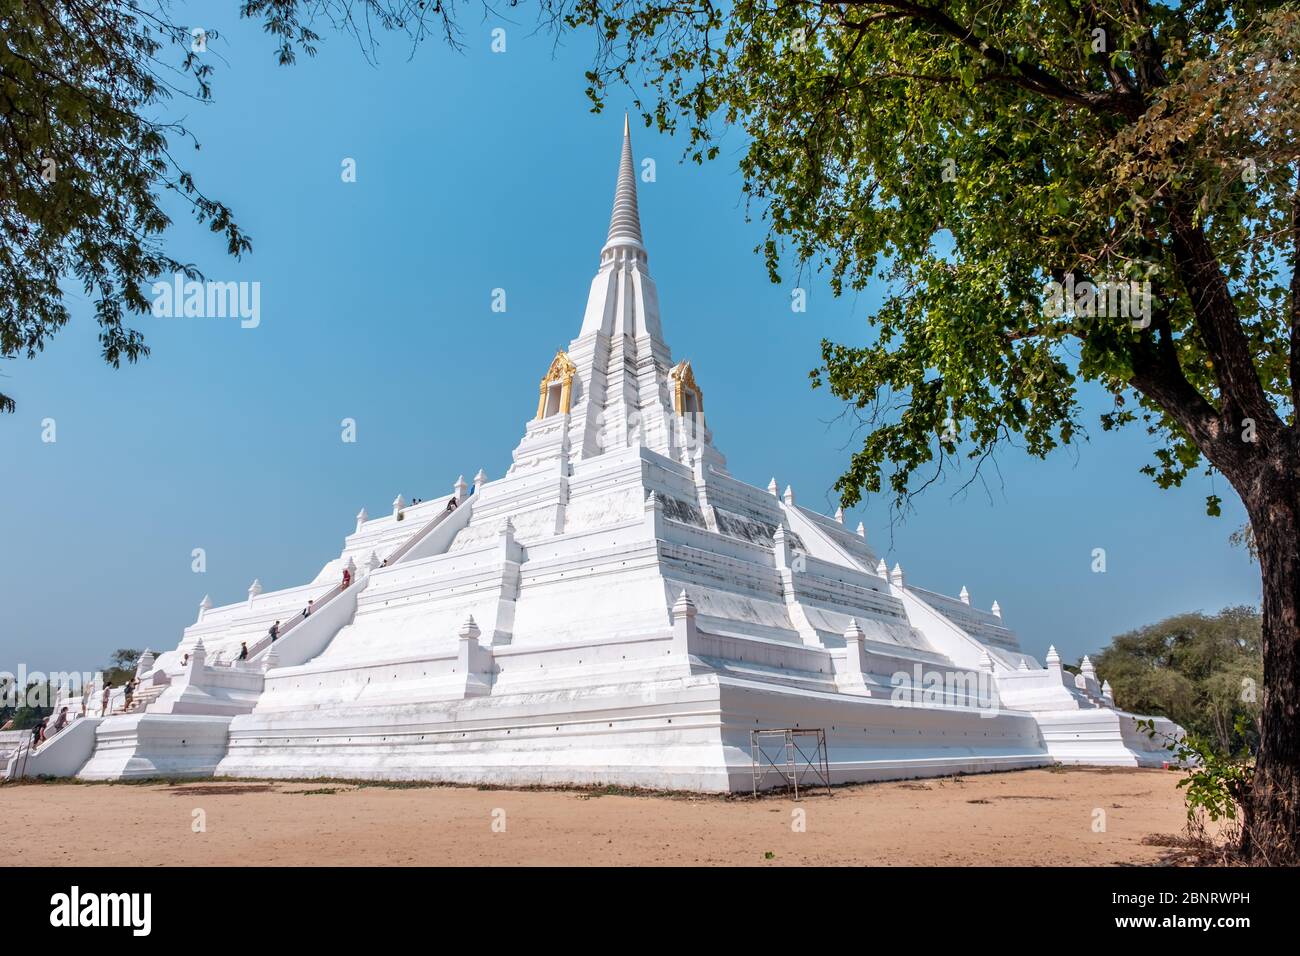 Ayutthaya, Bangkok / Thailand - 9. Februar 2020: Name dieses Ortes 'Wat Phu Khao Thong Tempel' der Tempel ist weiß und befindet sich in der Provinz Ayutthaya Stockfoto